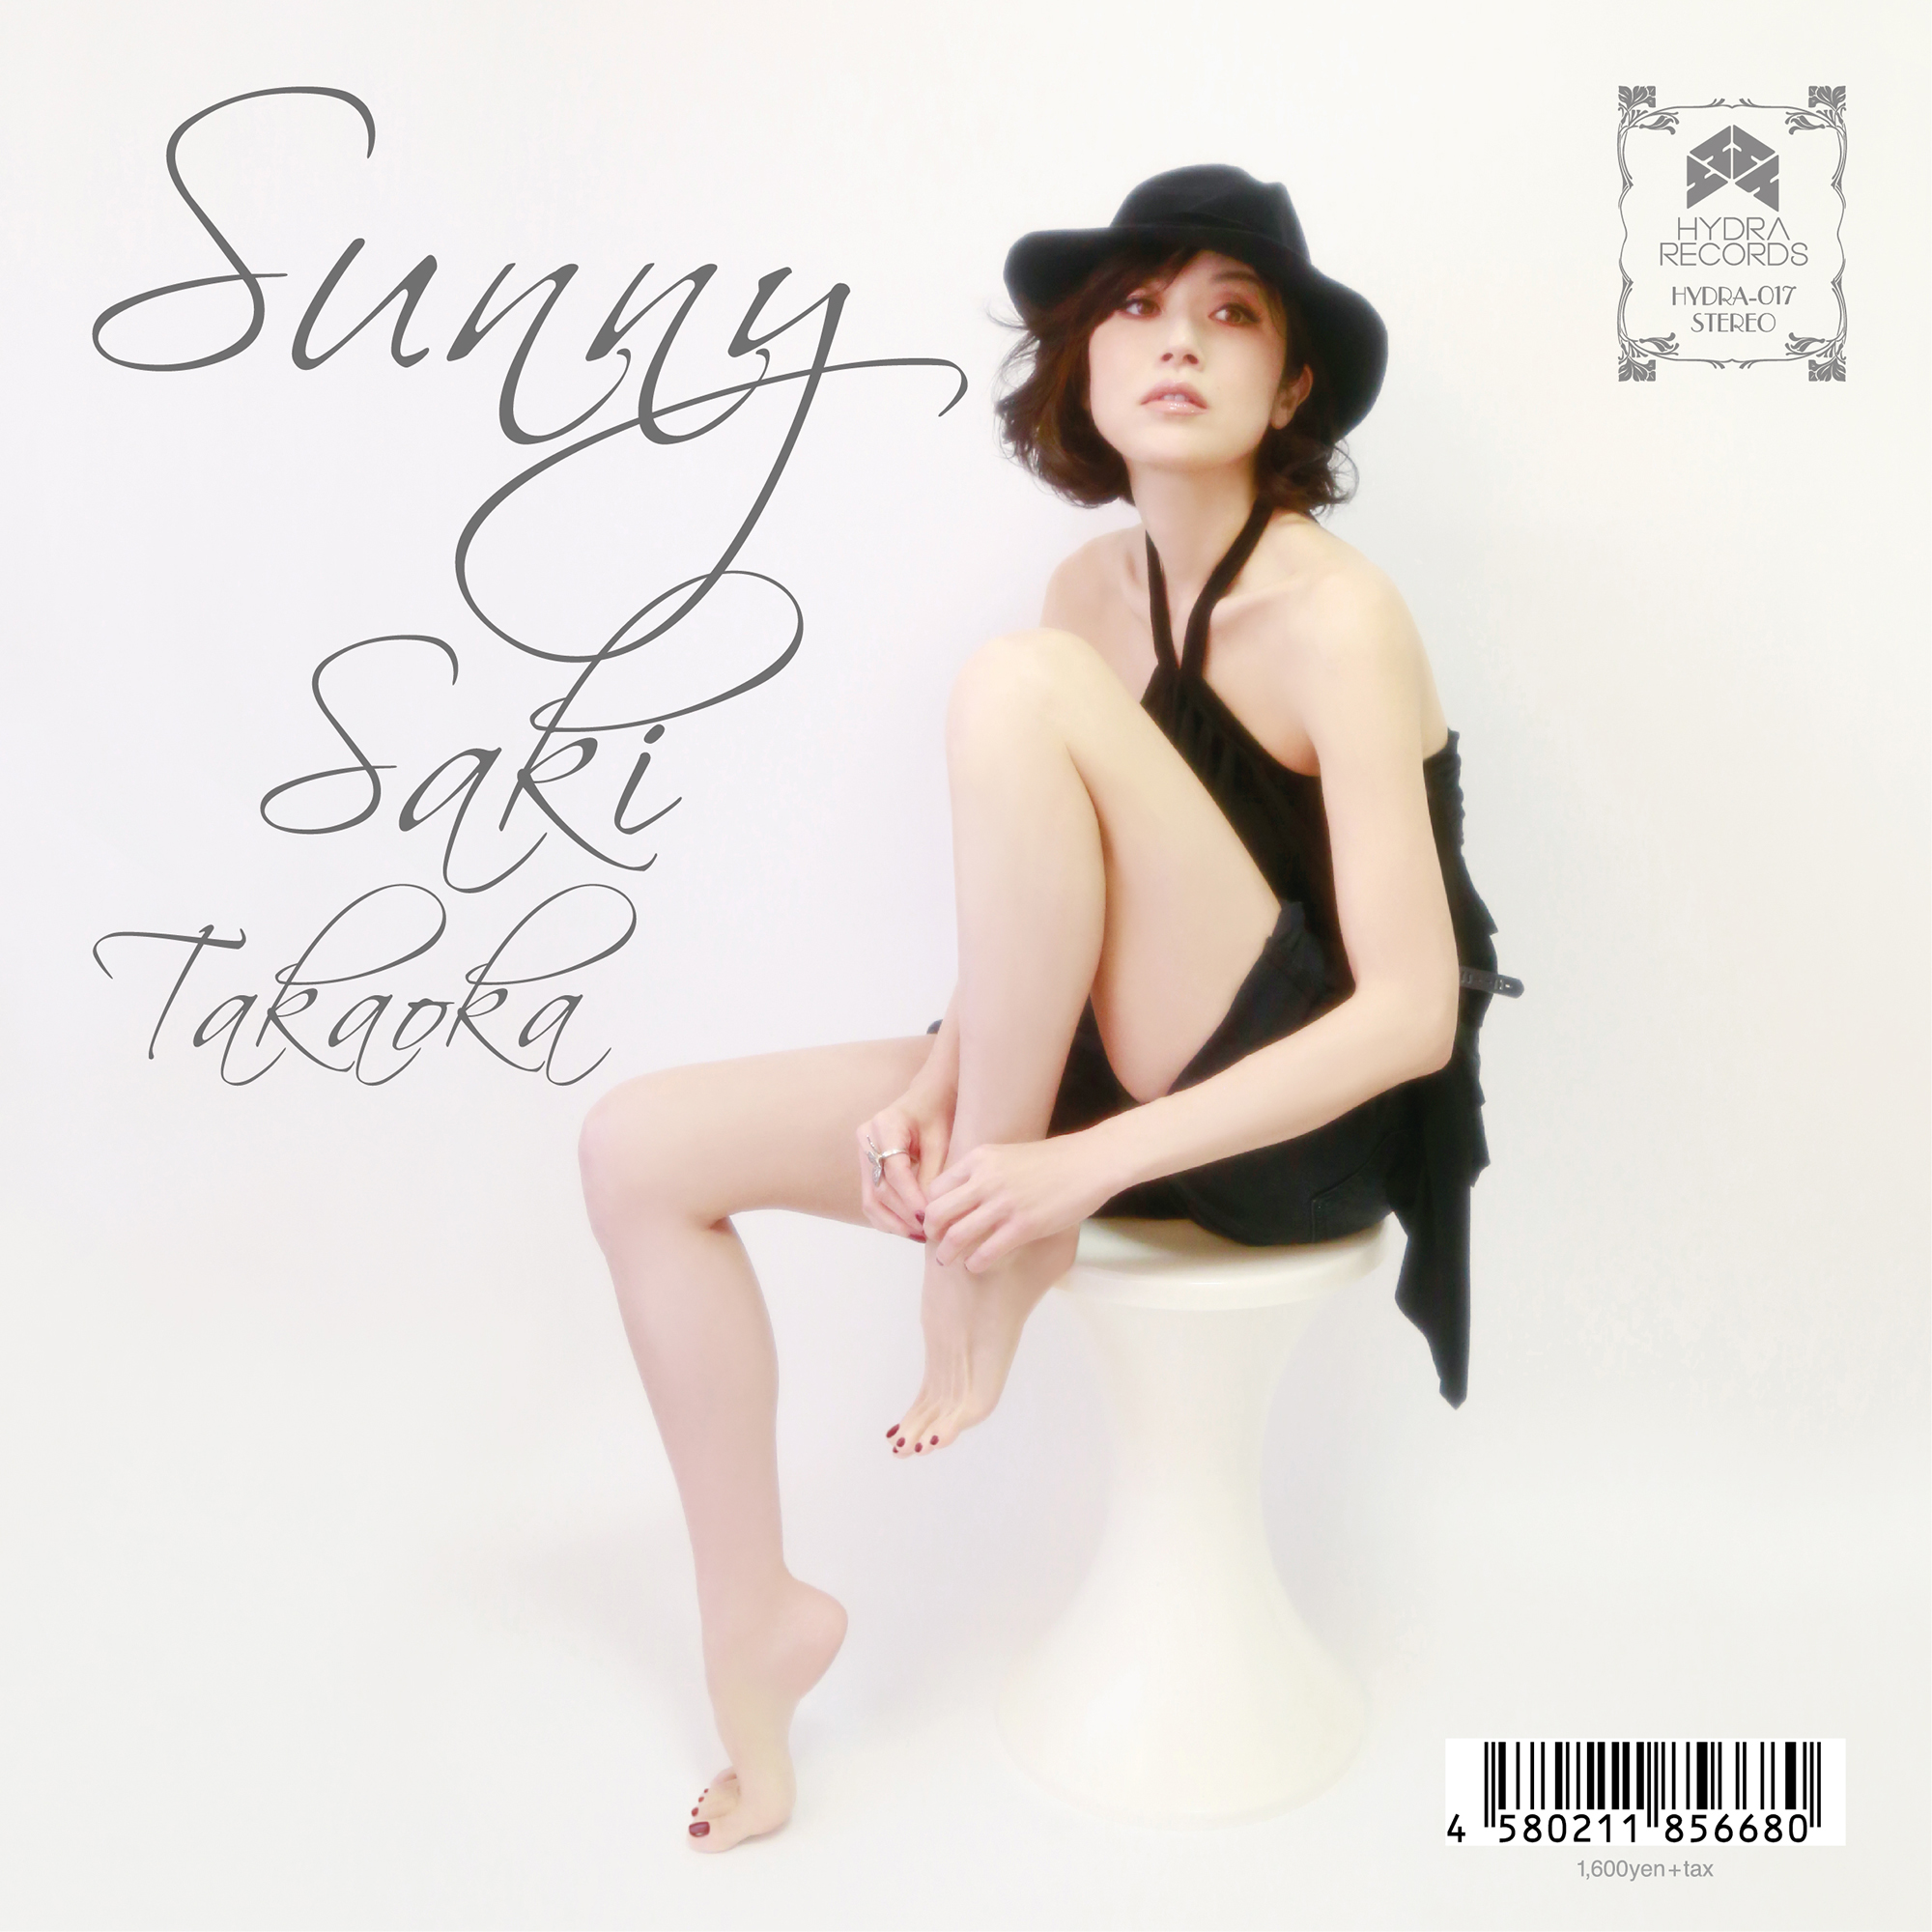 Saki Takaoka “Sunny”